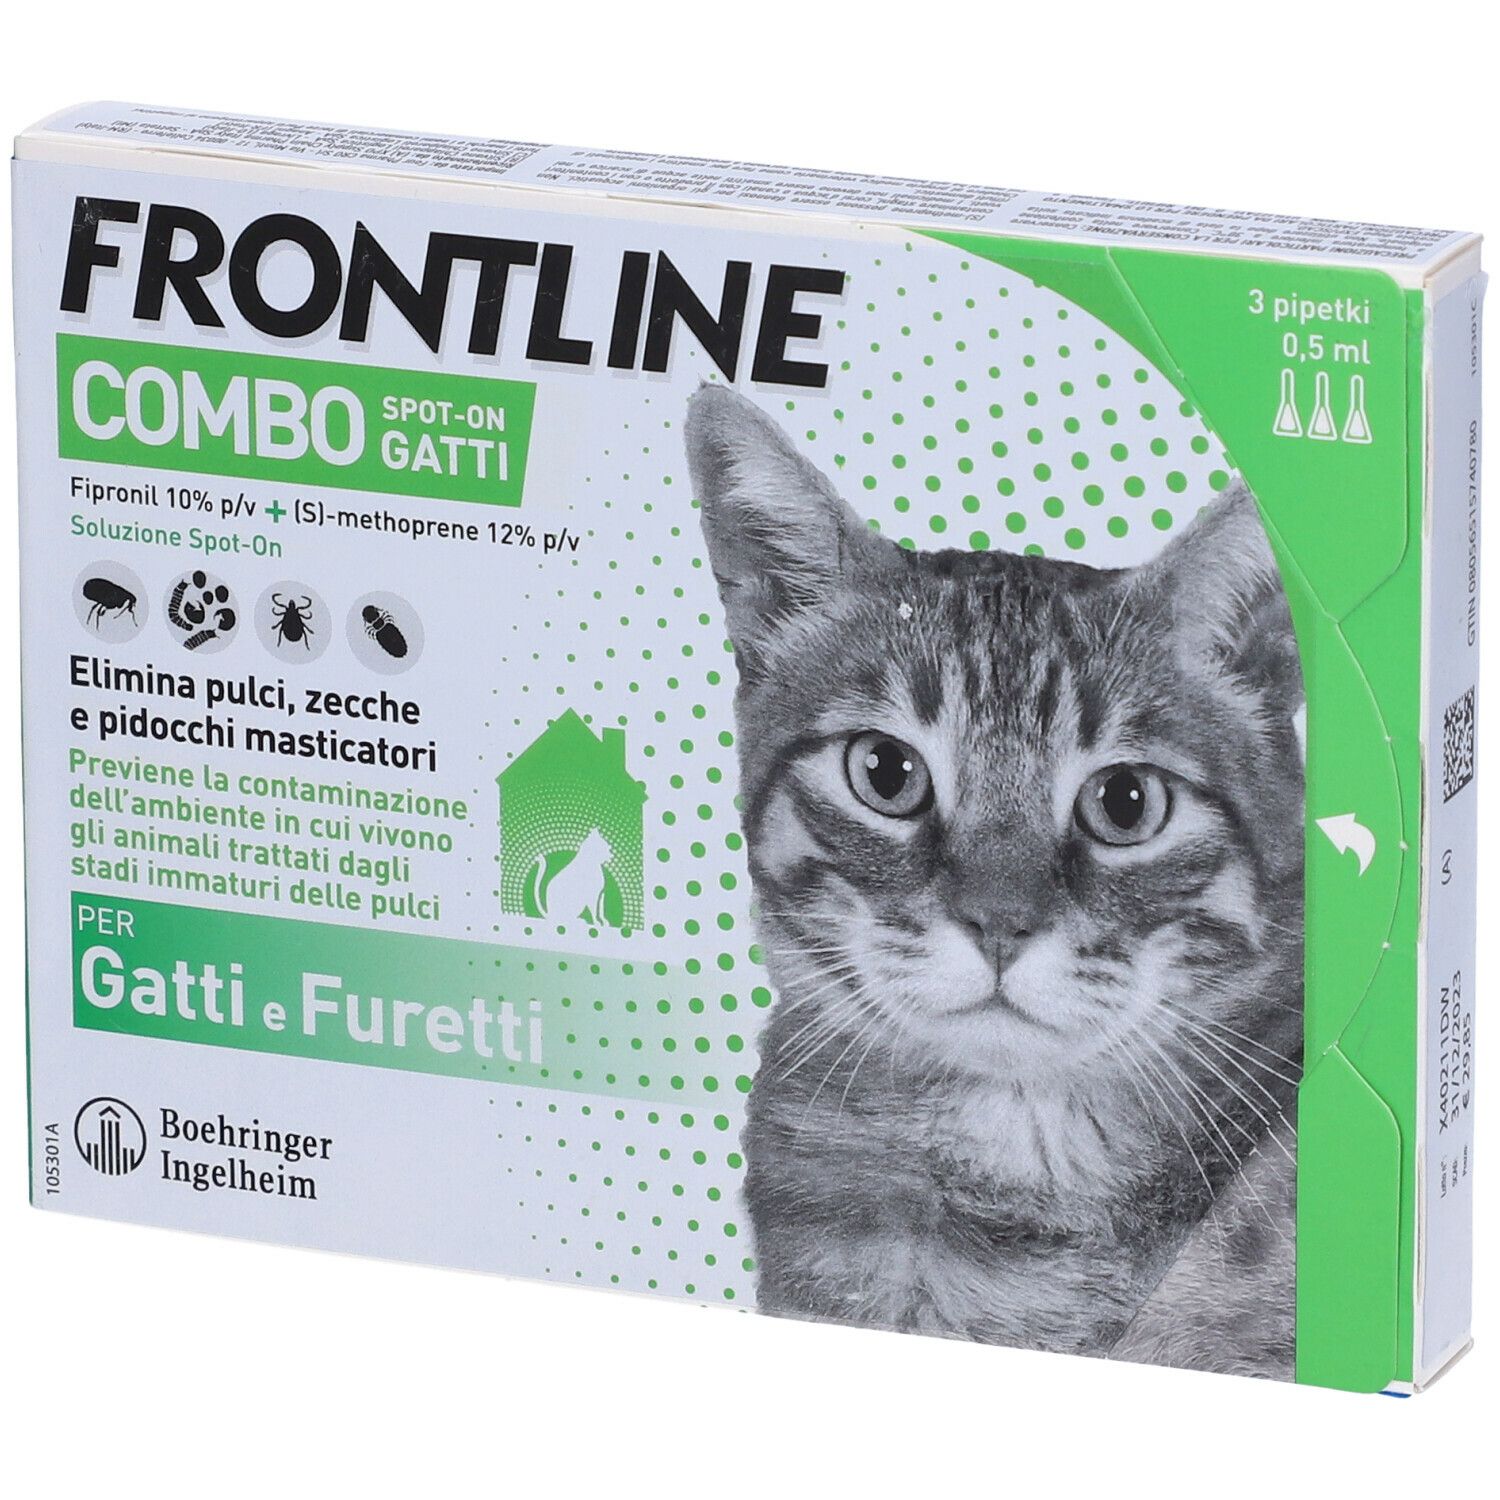 four pharma cro srl frontline combo spot-on gatti e furetti - 3 pipette da 0,5ml, protezione efficace contro zecche e pulci